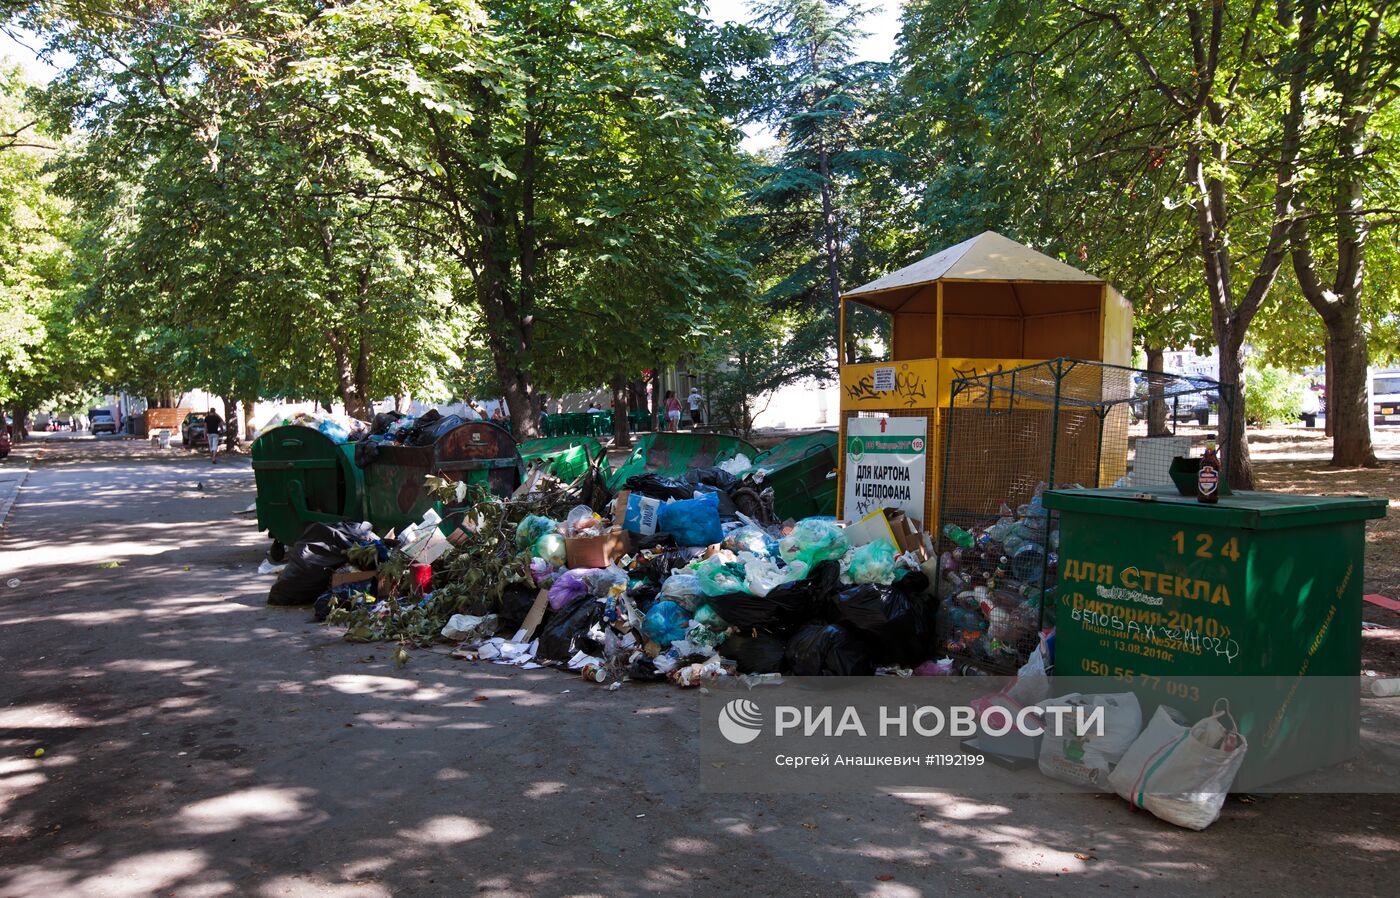 Экологическая ситуация на улицах Севастополя